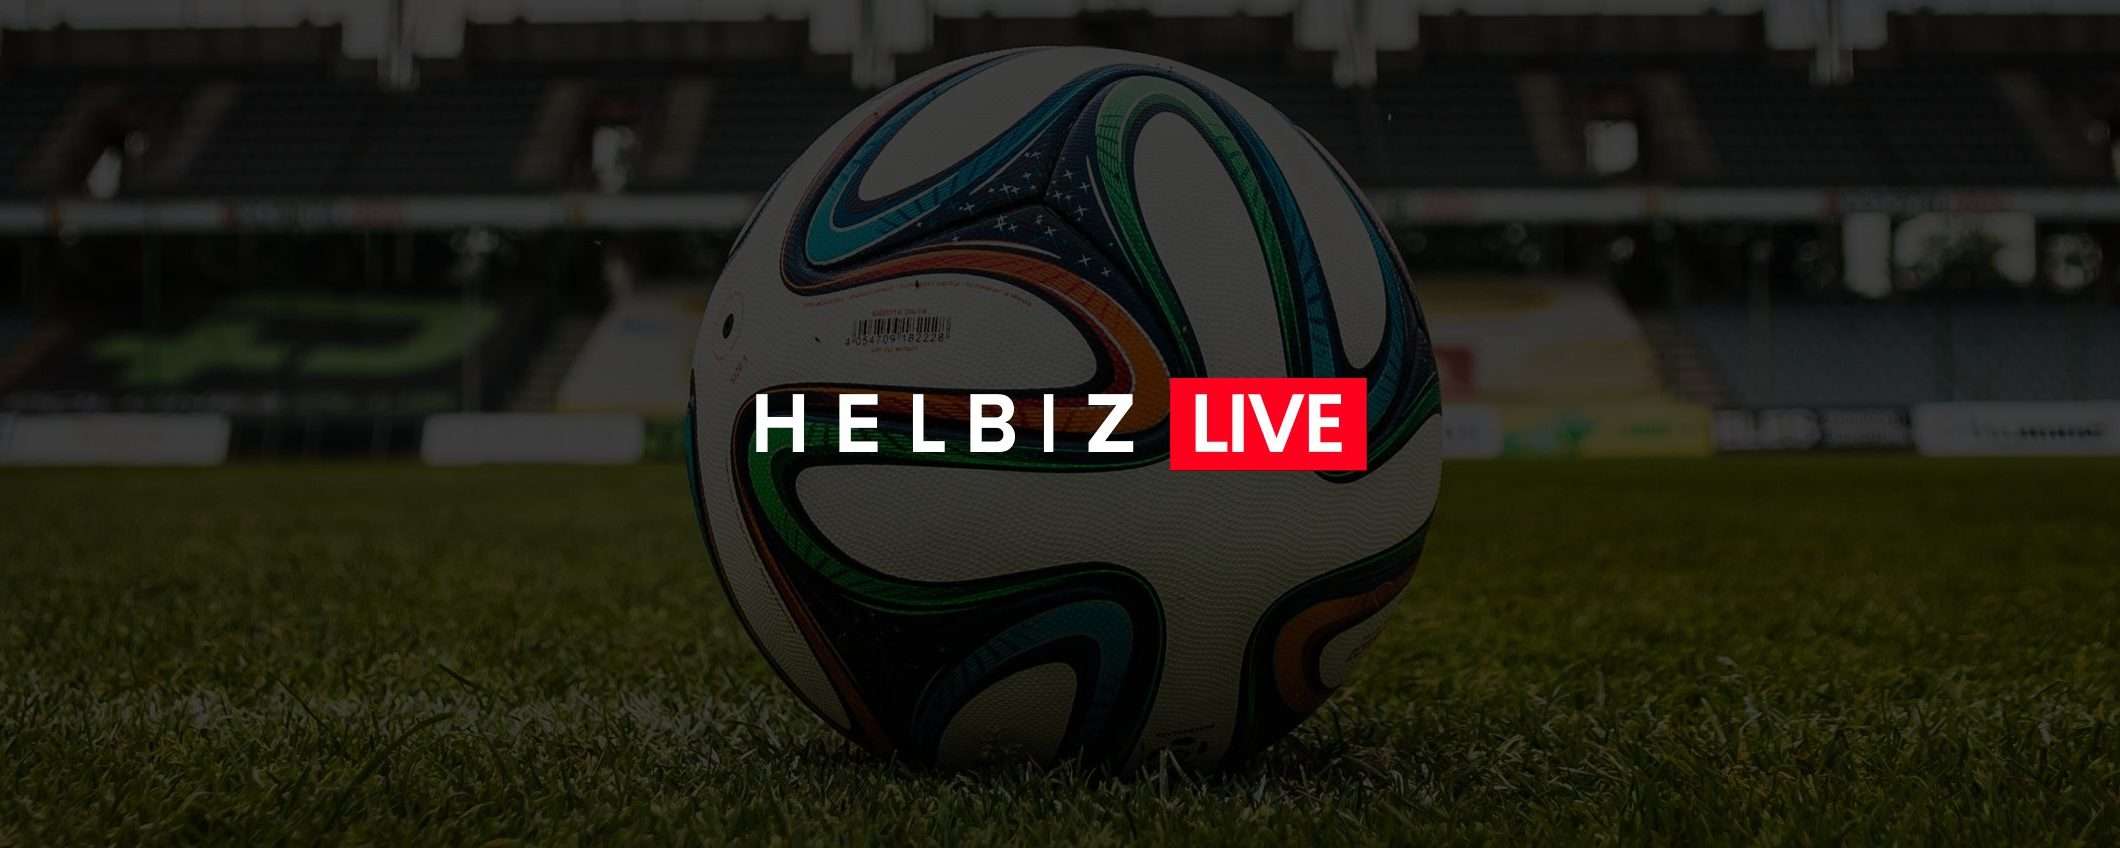 Il Calcio della Serie B sbarca su Facebook con Helbiz Live